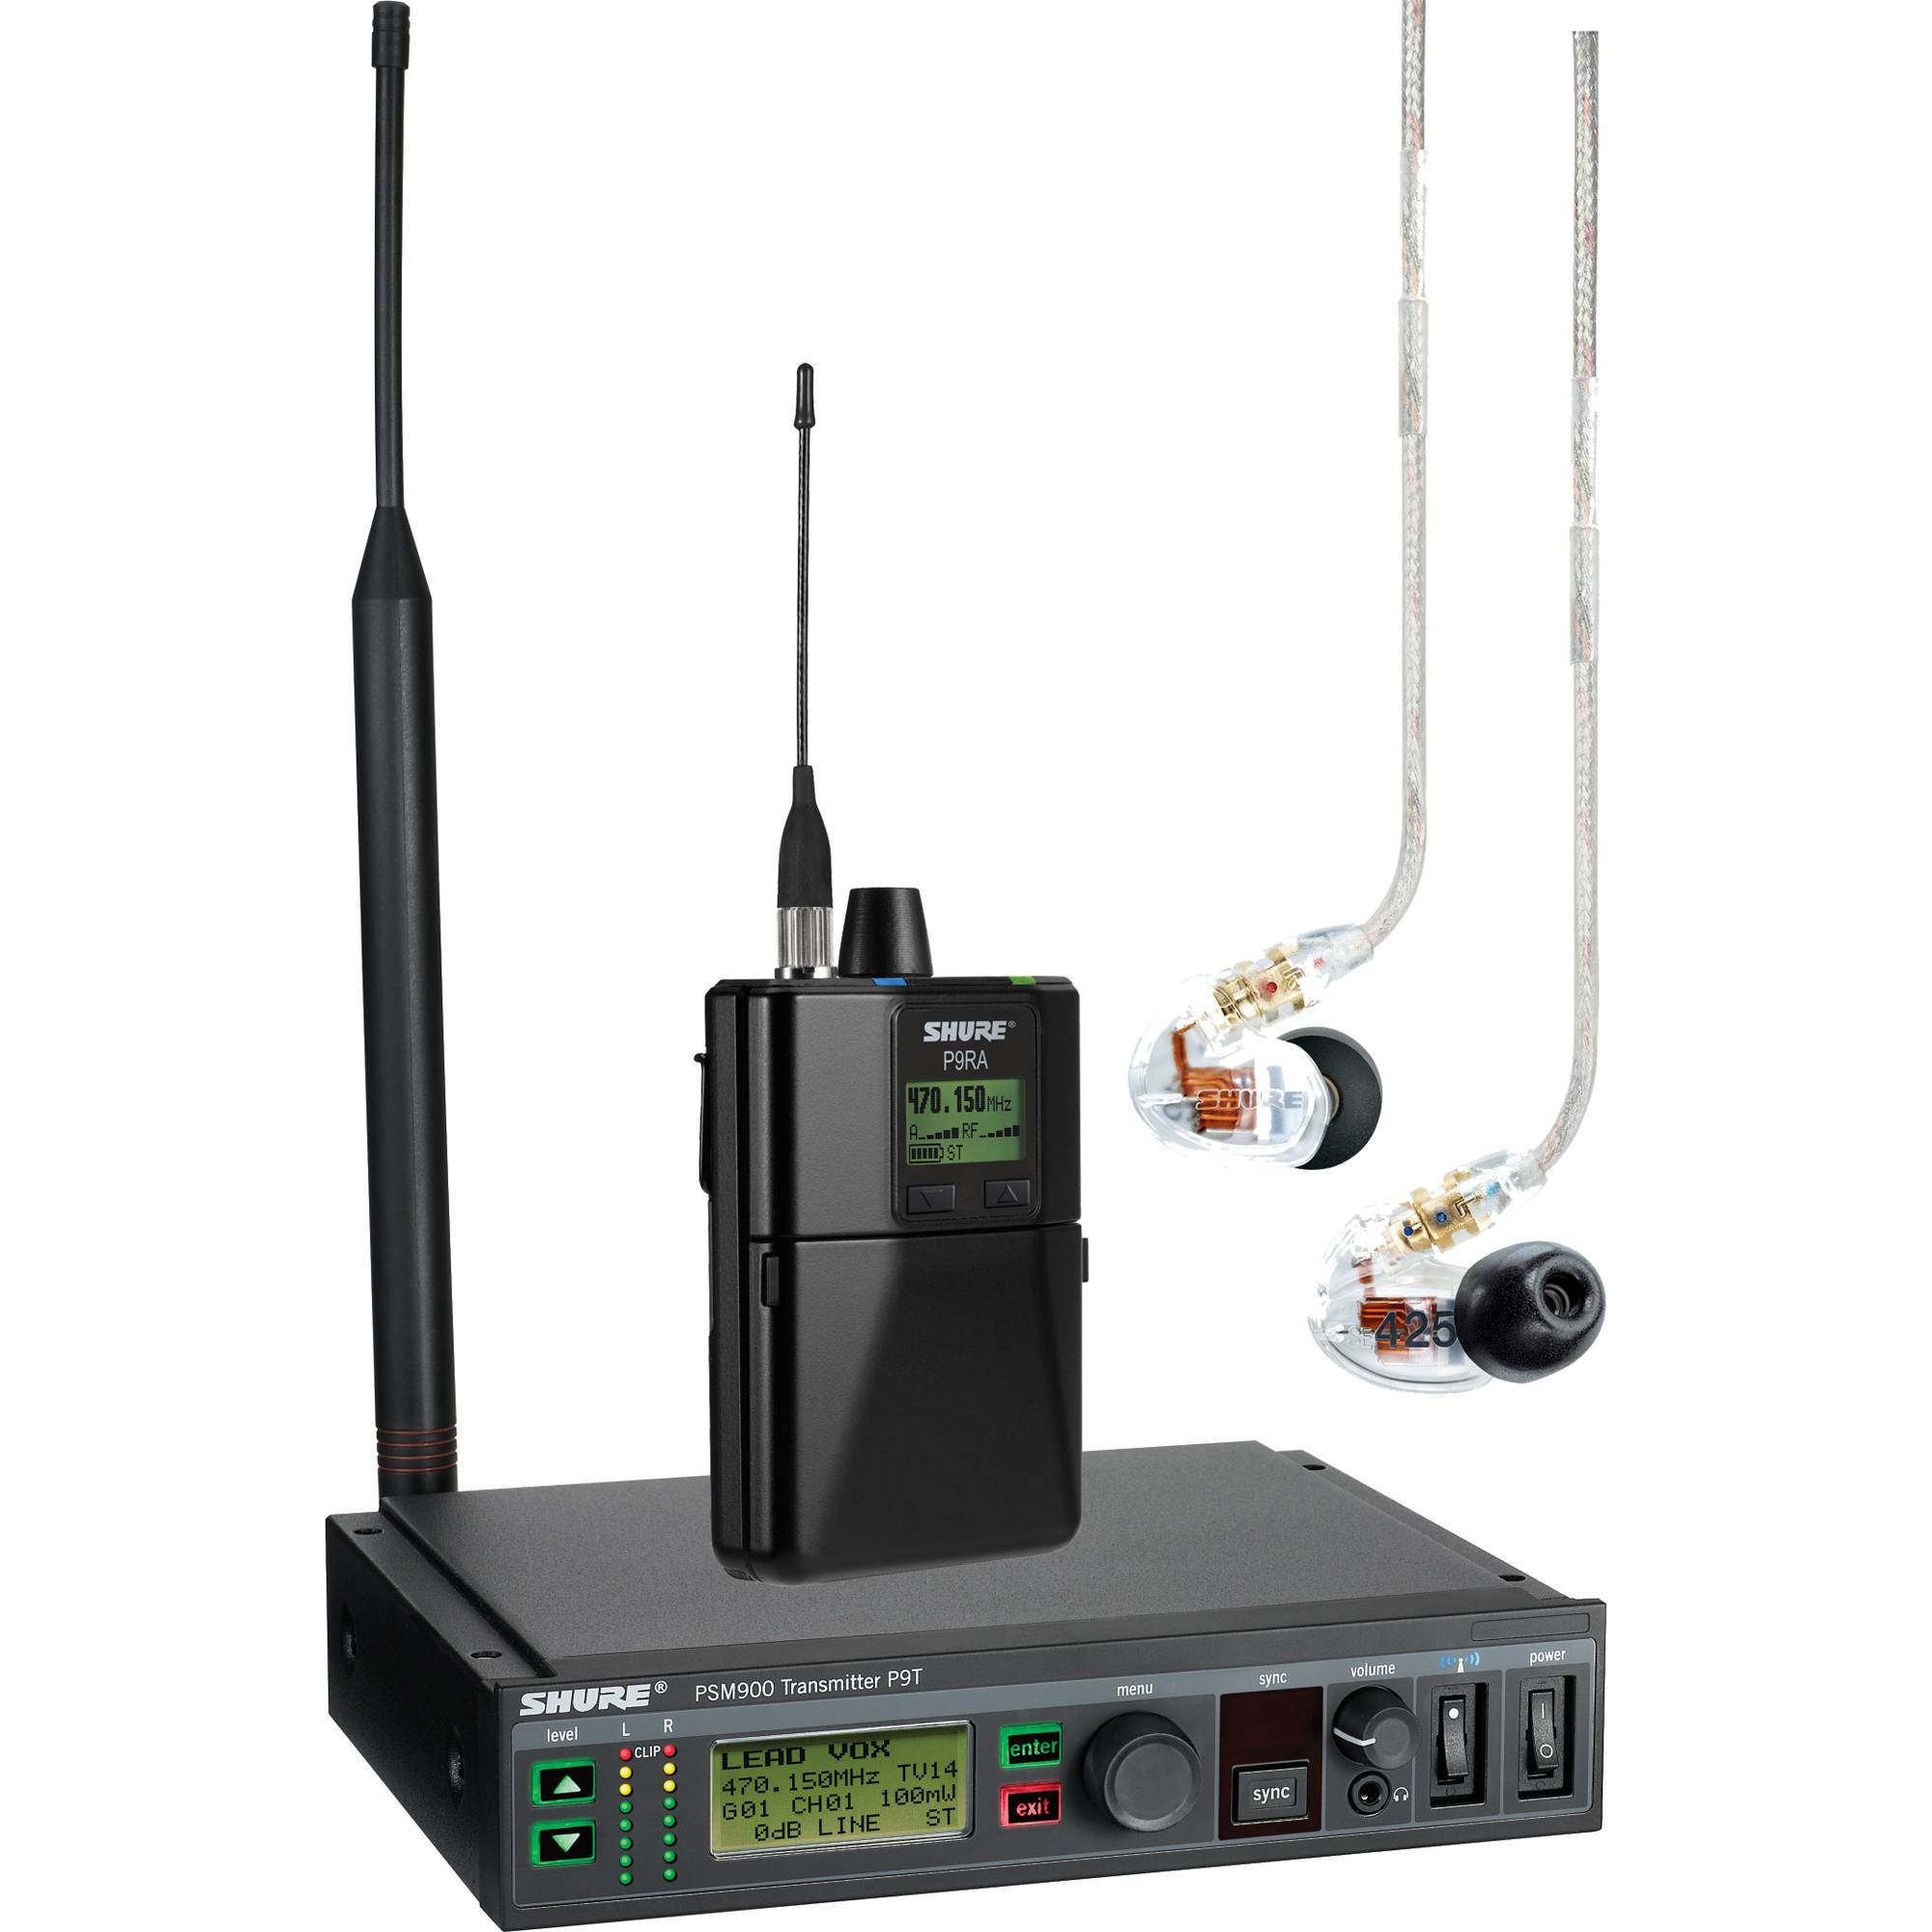 Ensemble HF Shure ear monitor PSM900 emetteur & récepteur